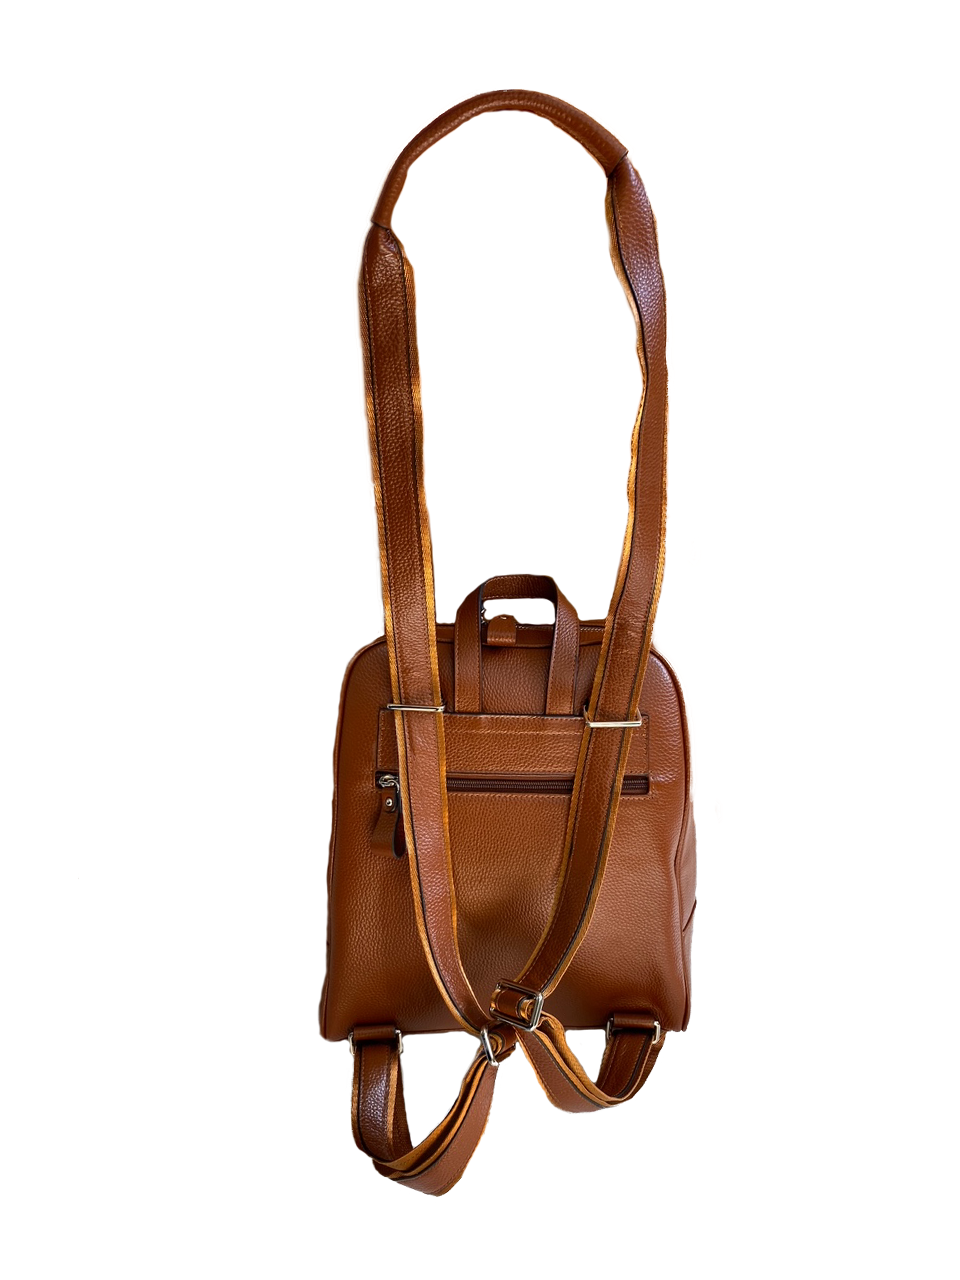 Kingscliff Tan Handbag for Women | AddisonRoad